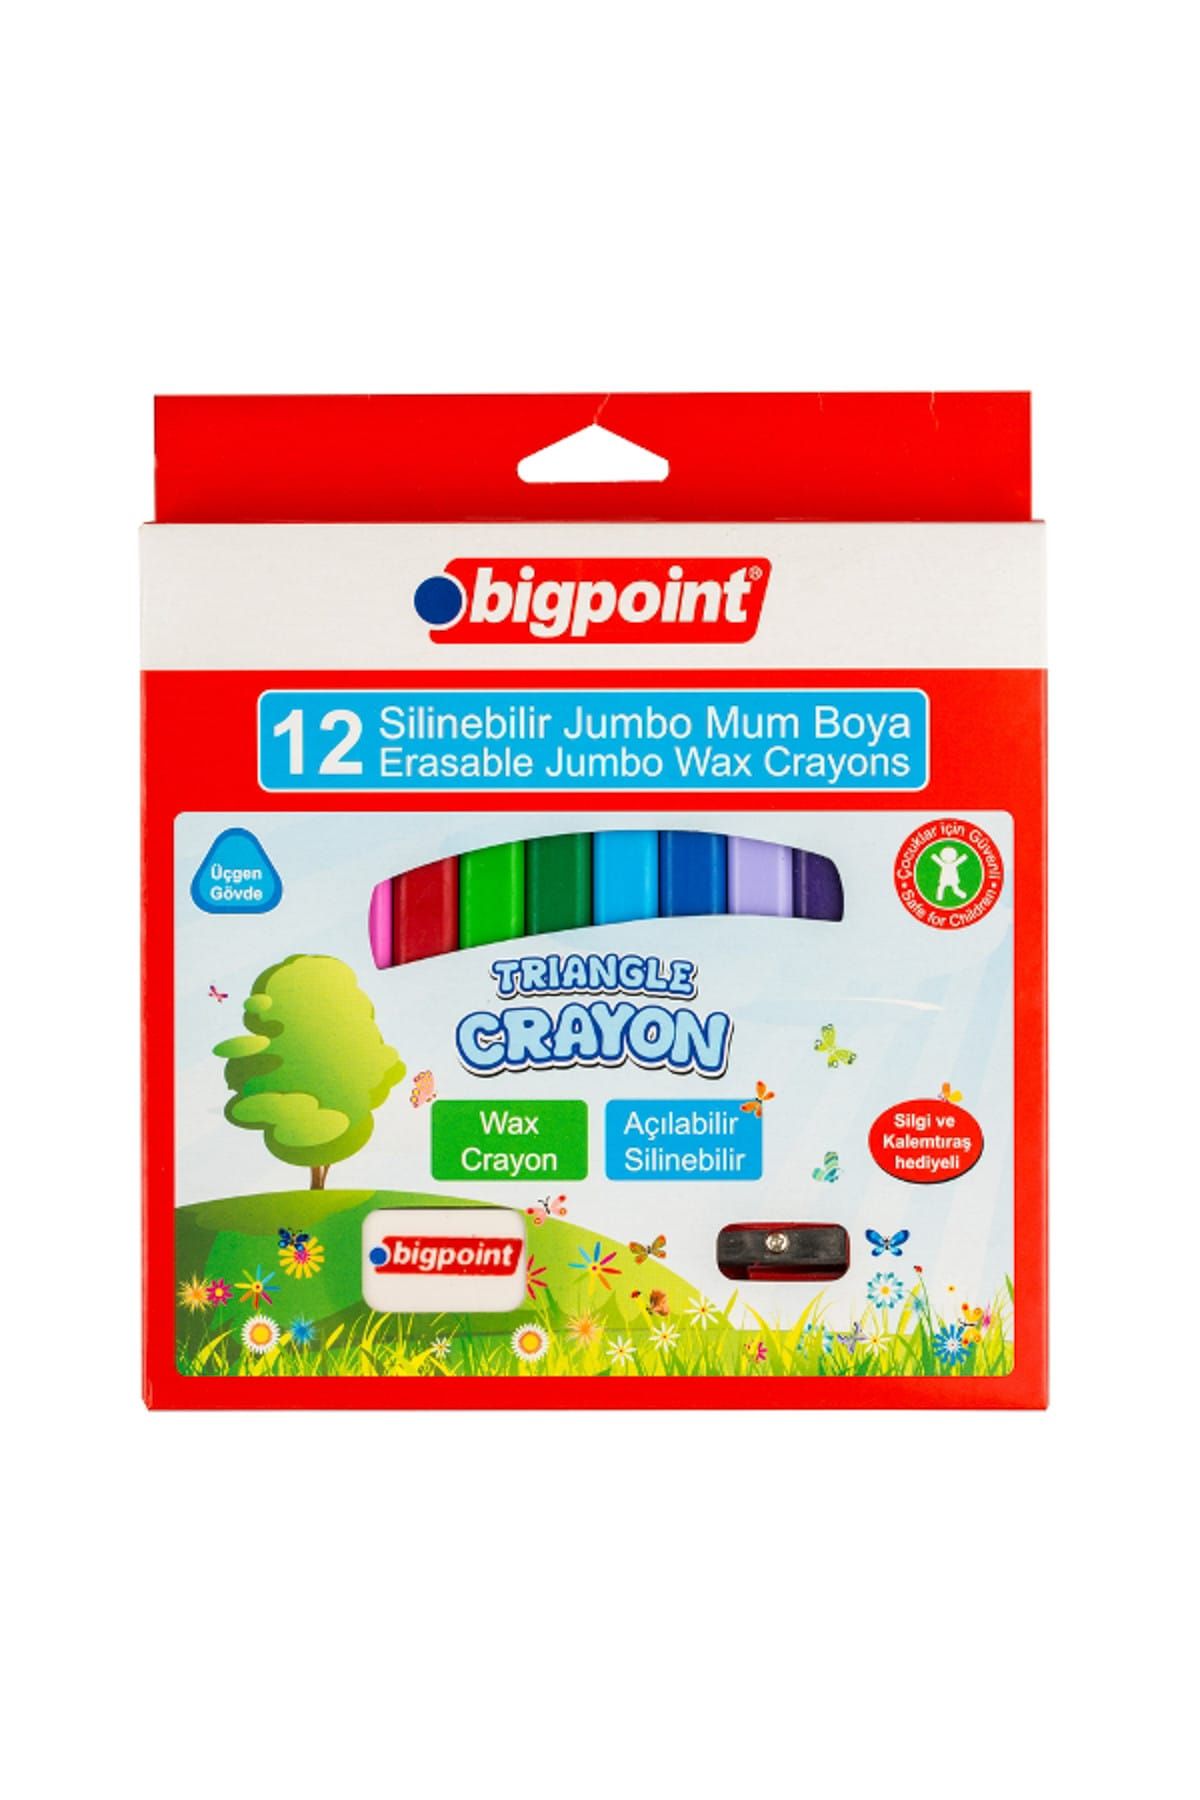 Bigpoint Silinebilir Mum Boya 12 Renk